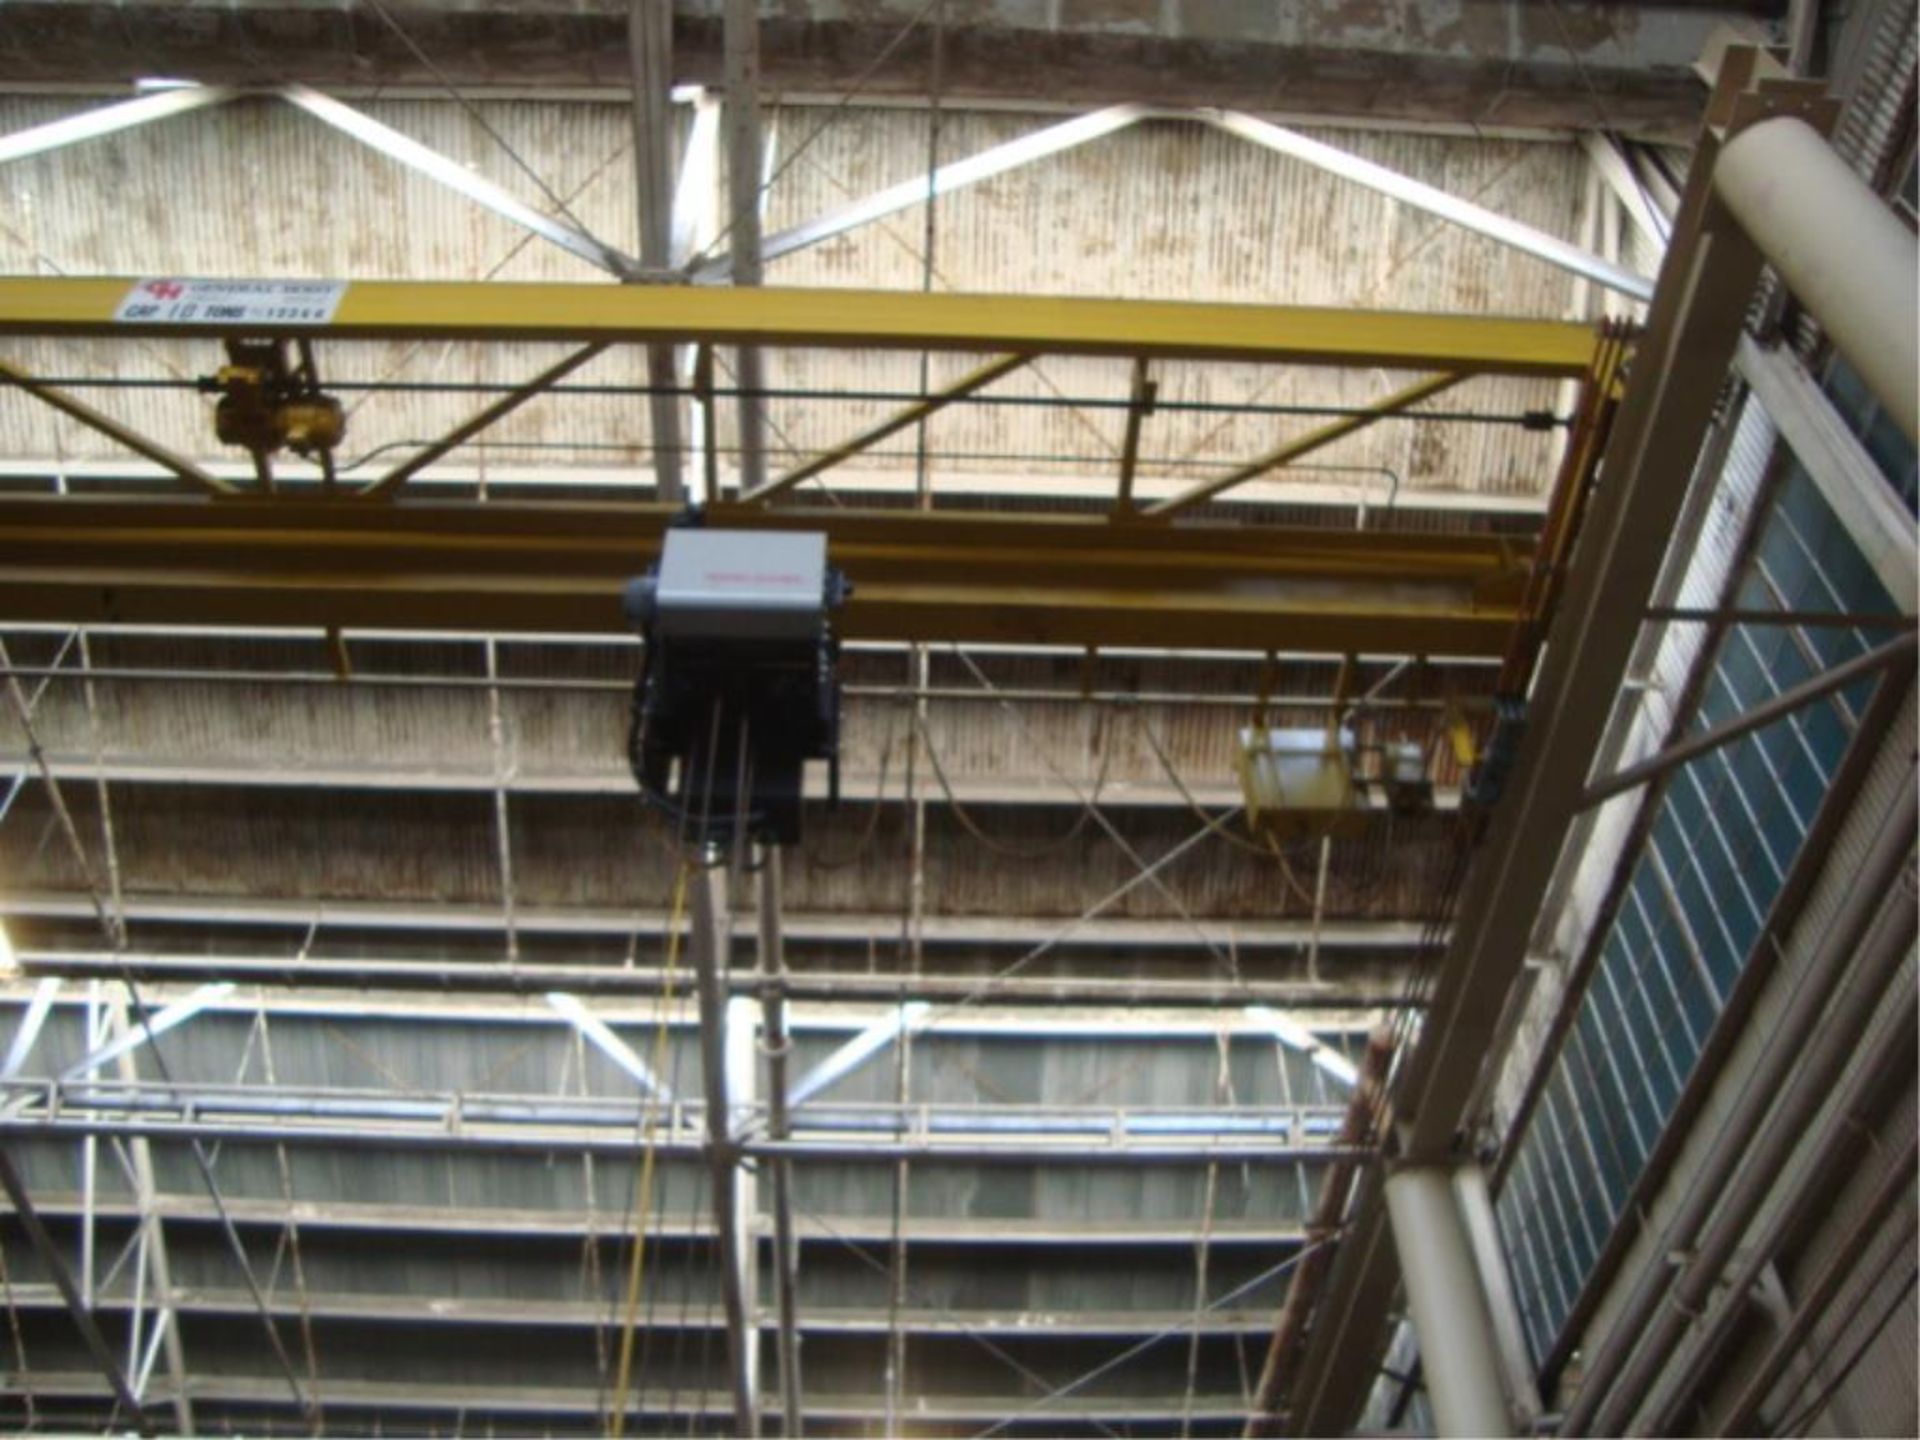 10-Ton Capacity Overhead Bridge Crane - Image 3 of 10